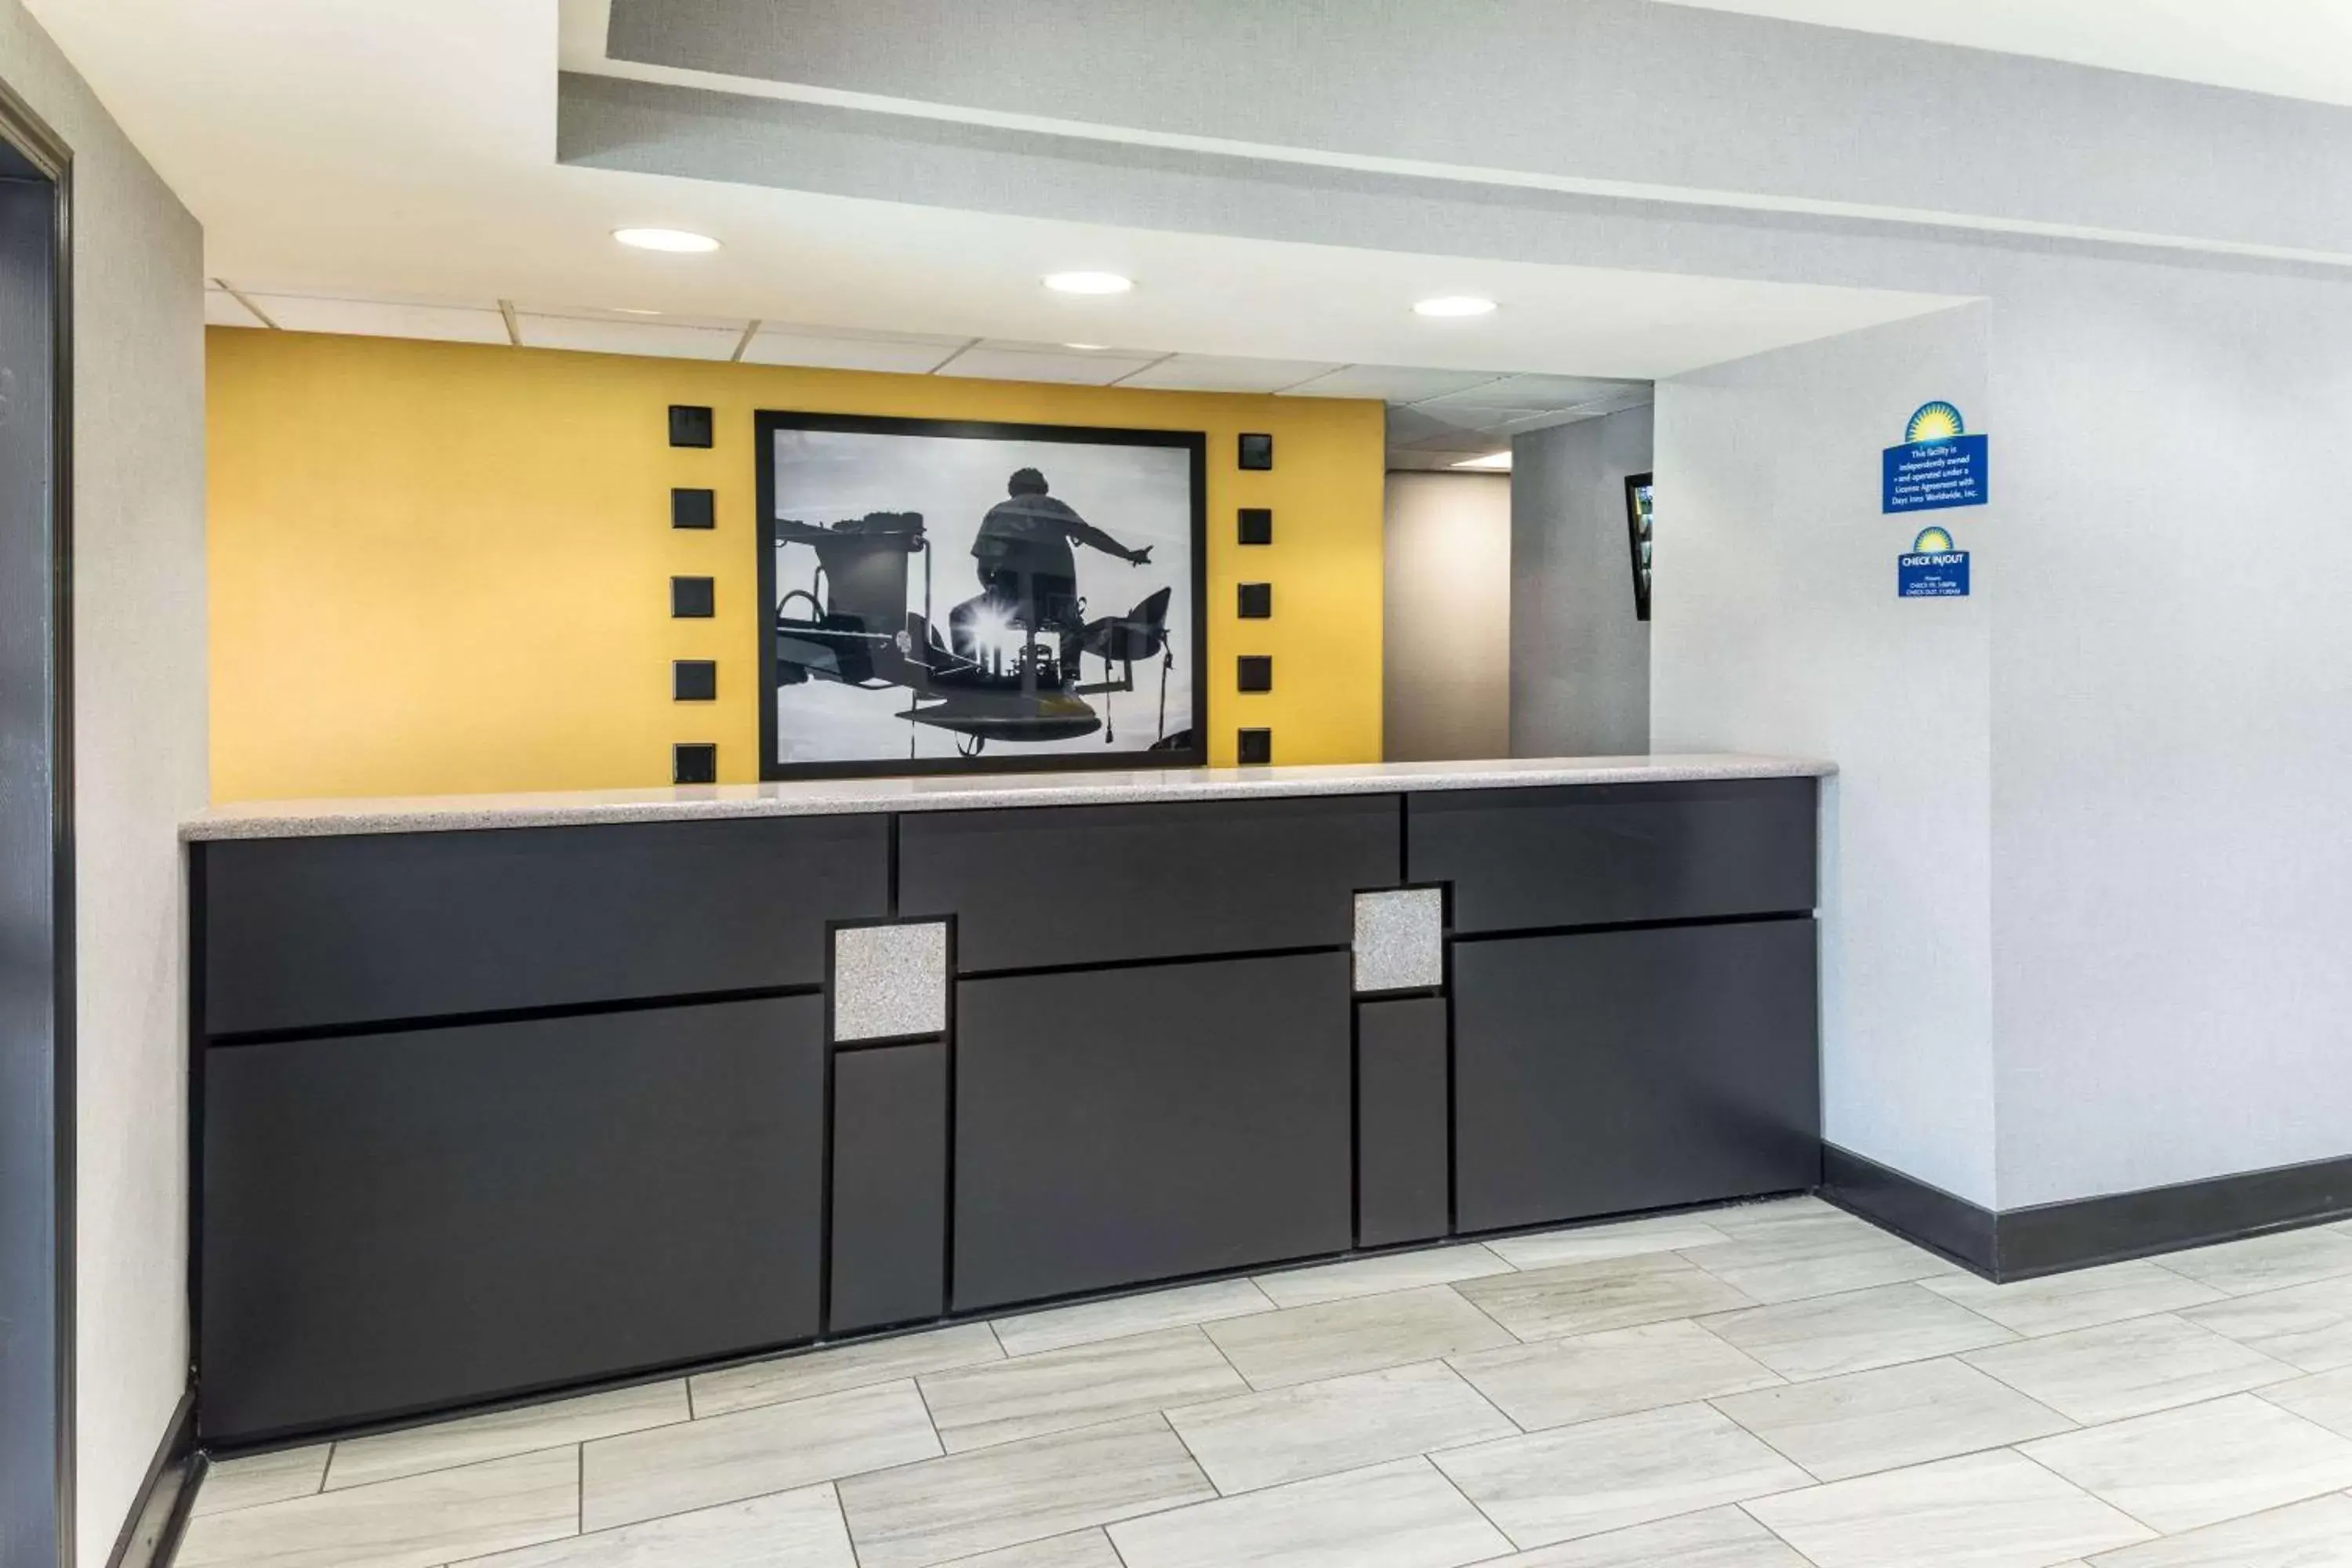 Lobby or reception, Lobby/Reception in Days Inn & Suites by Wyndham Union City